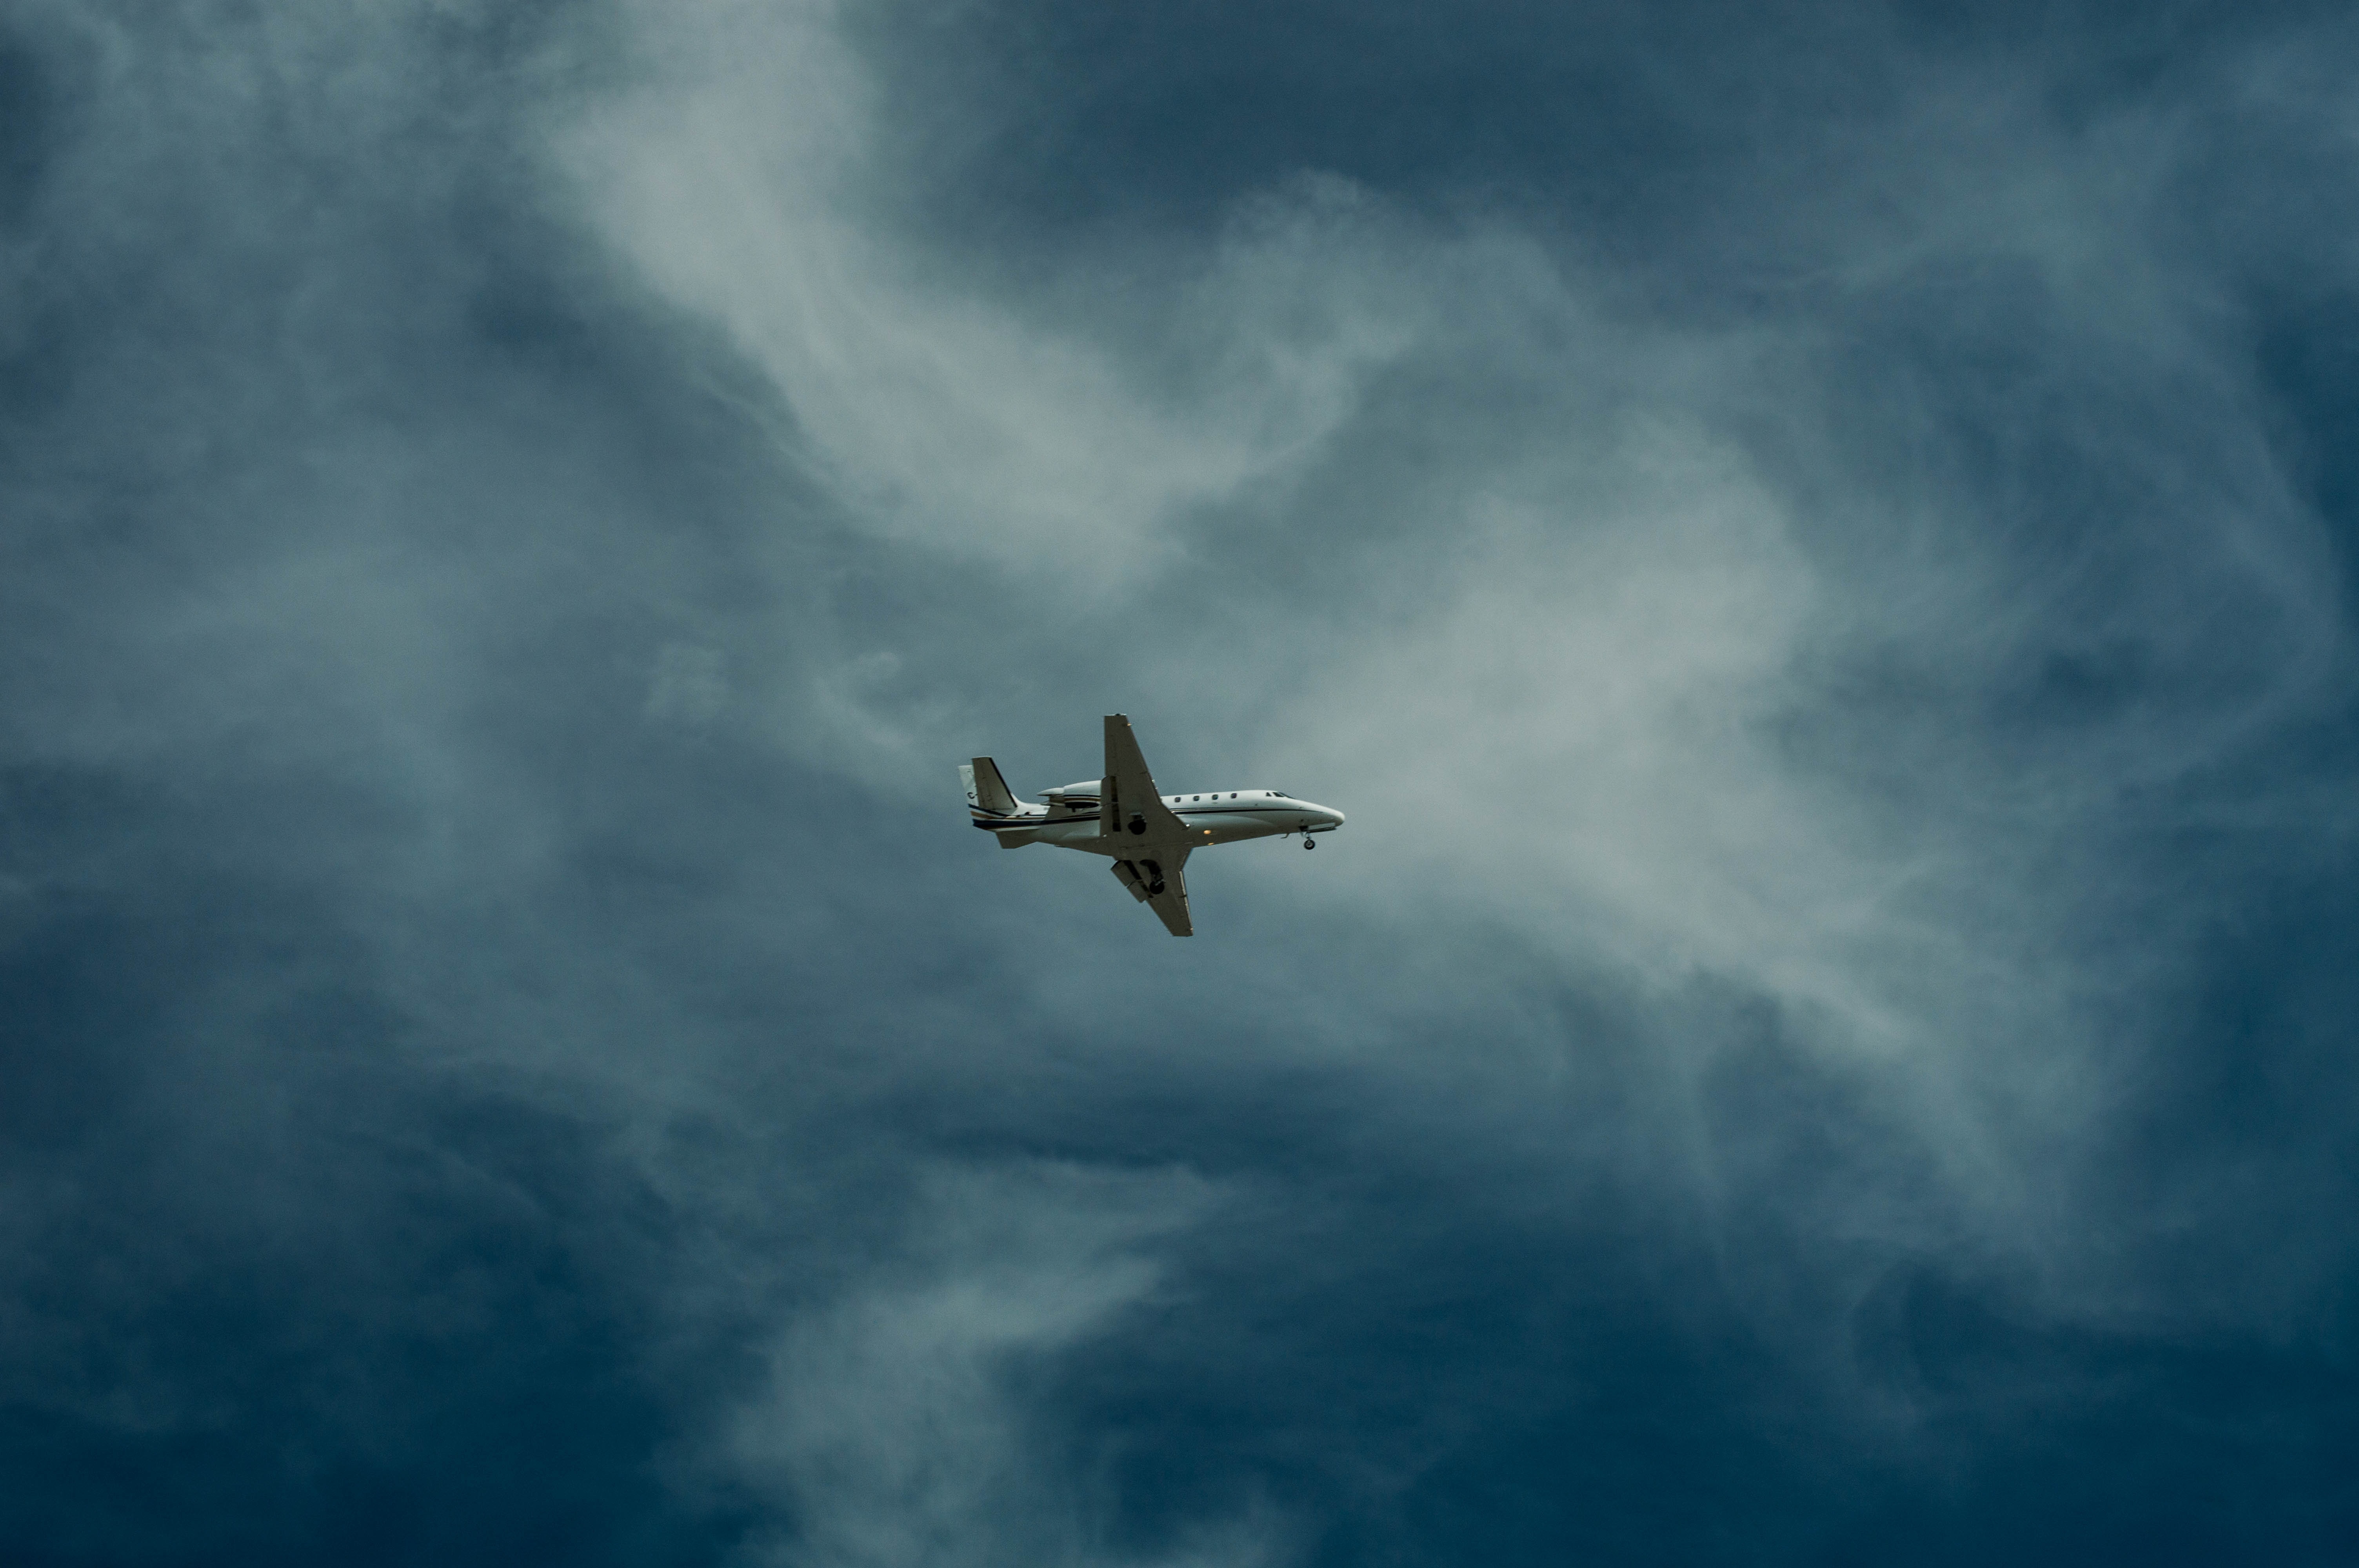 Самолет находящийся в полете преодолевает 260 метров. Самолет в небе. Cfvjktn DF yt,t. Обои самолет. Cfvjk`n d uyt,r.